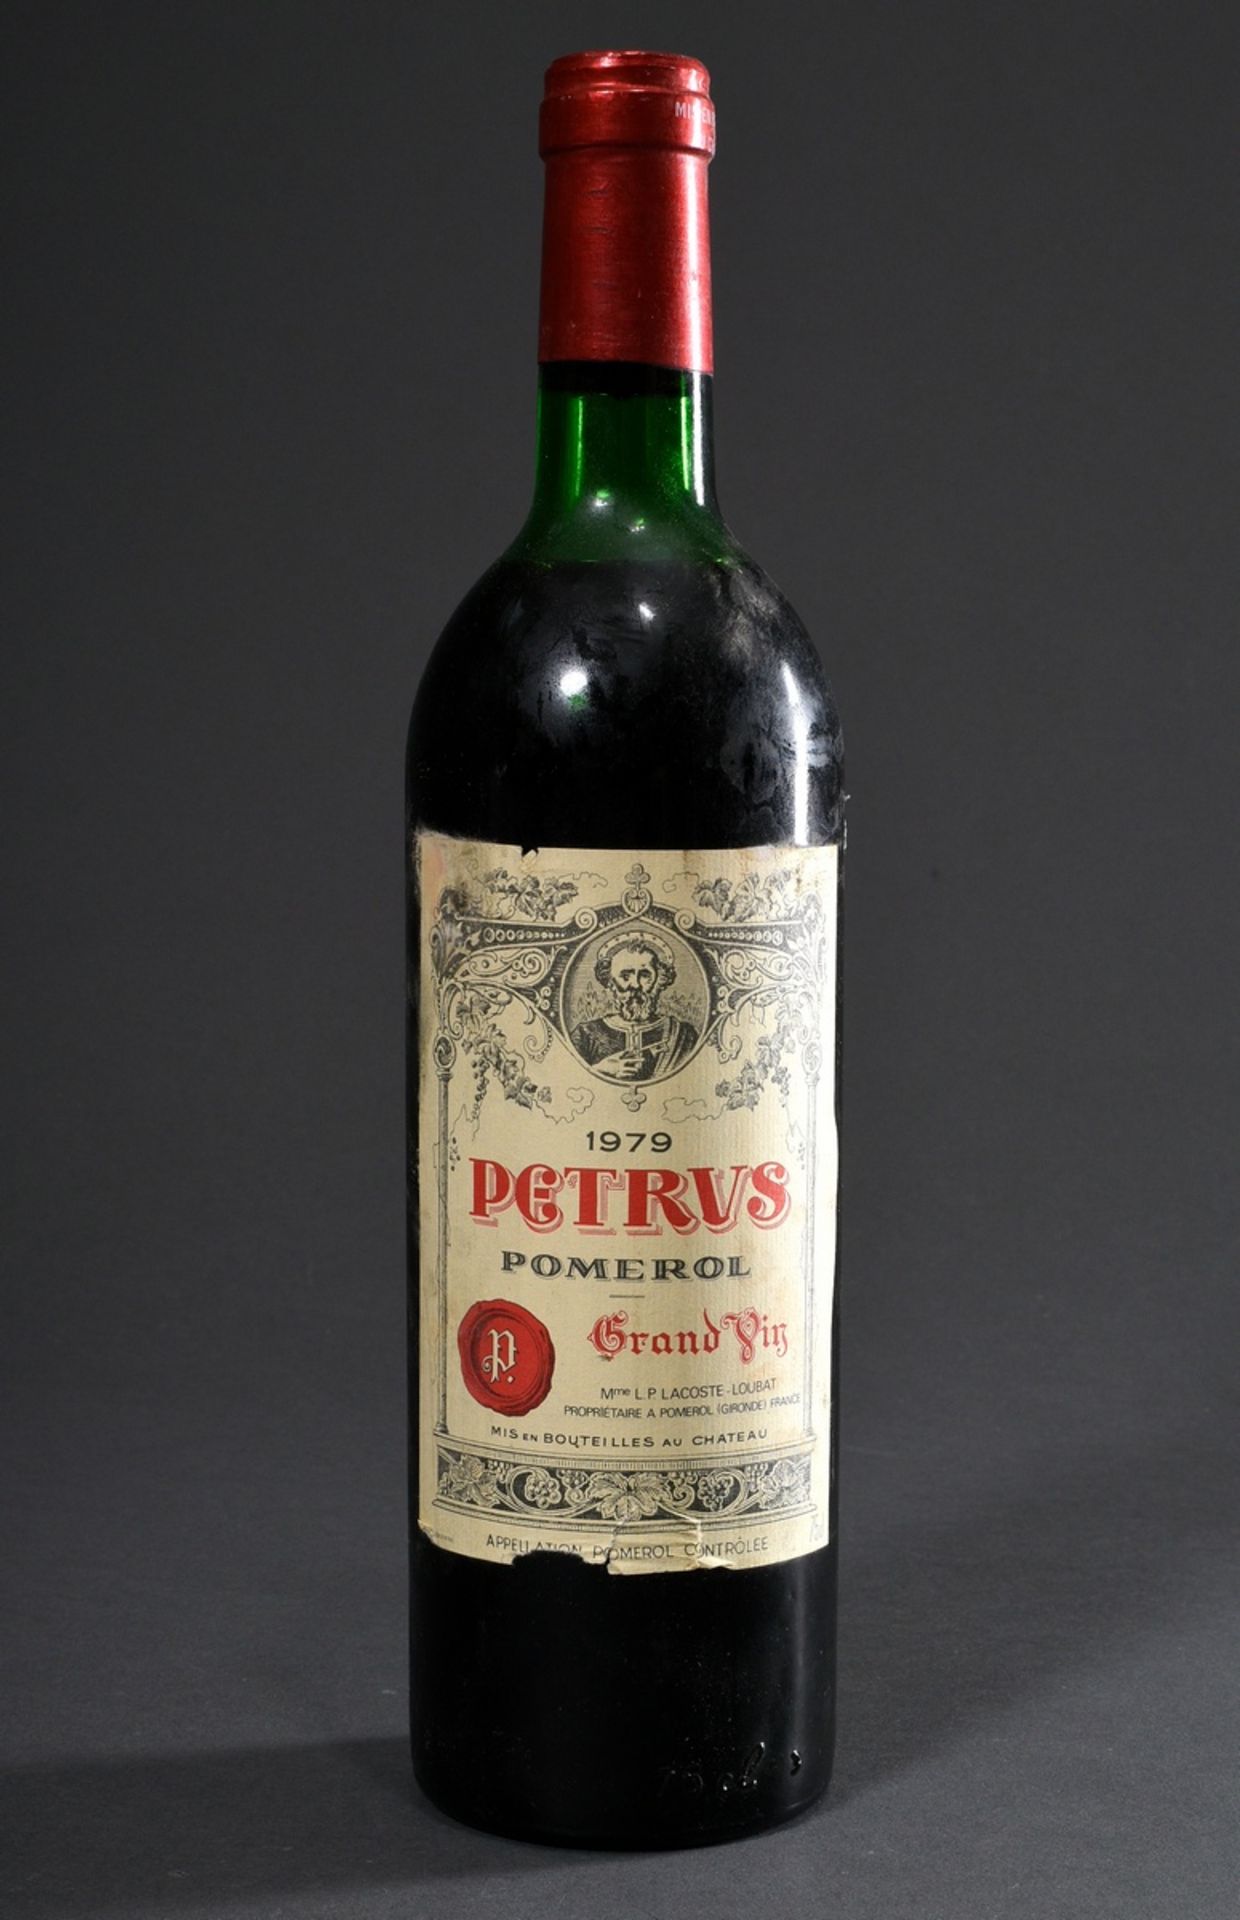 Bottle 1979 Bordeaux red wine "Petrus", Grand Vin, Pomerol, chateau proof, 0,75l, upper shoulder, l